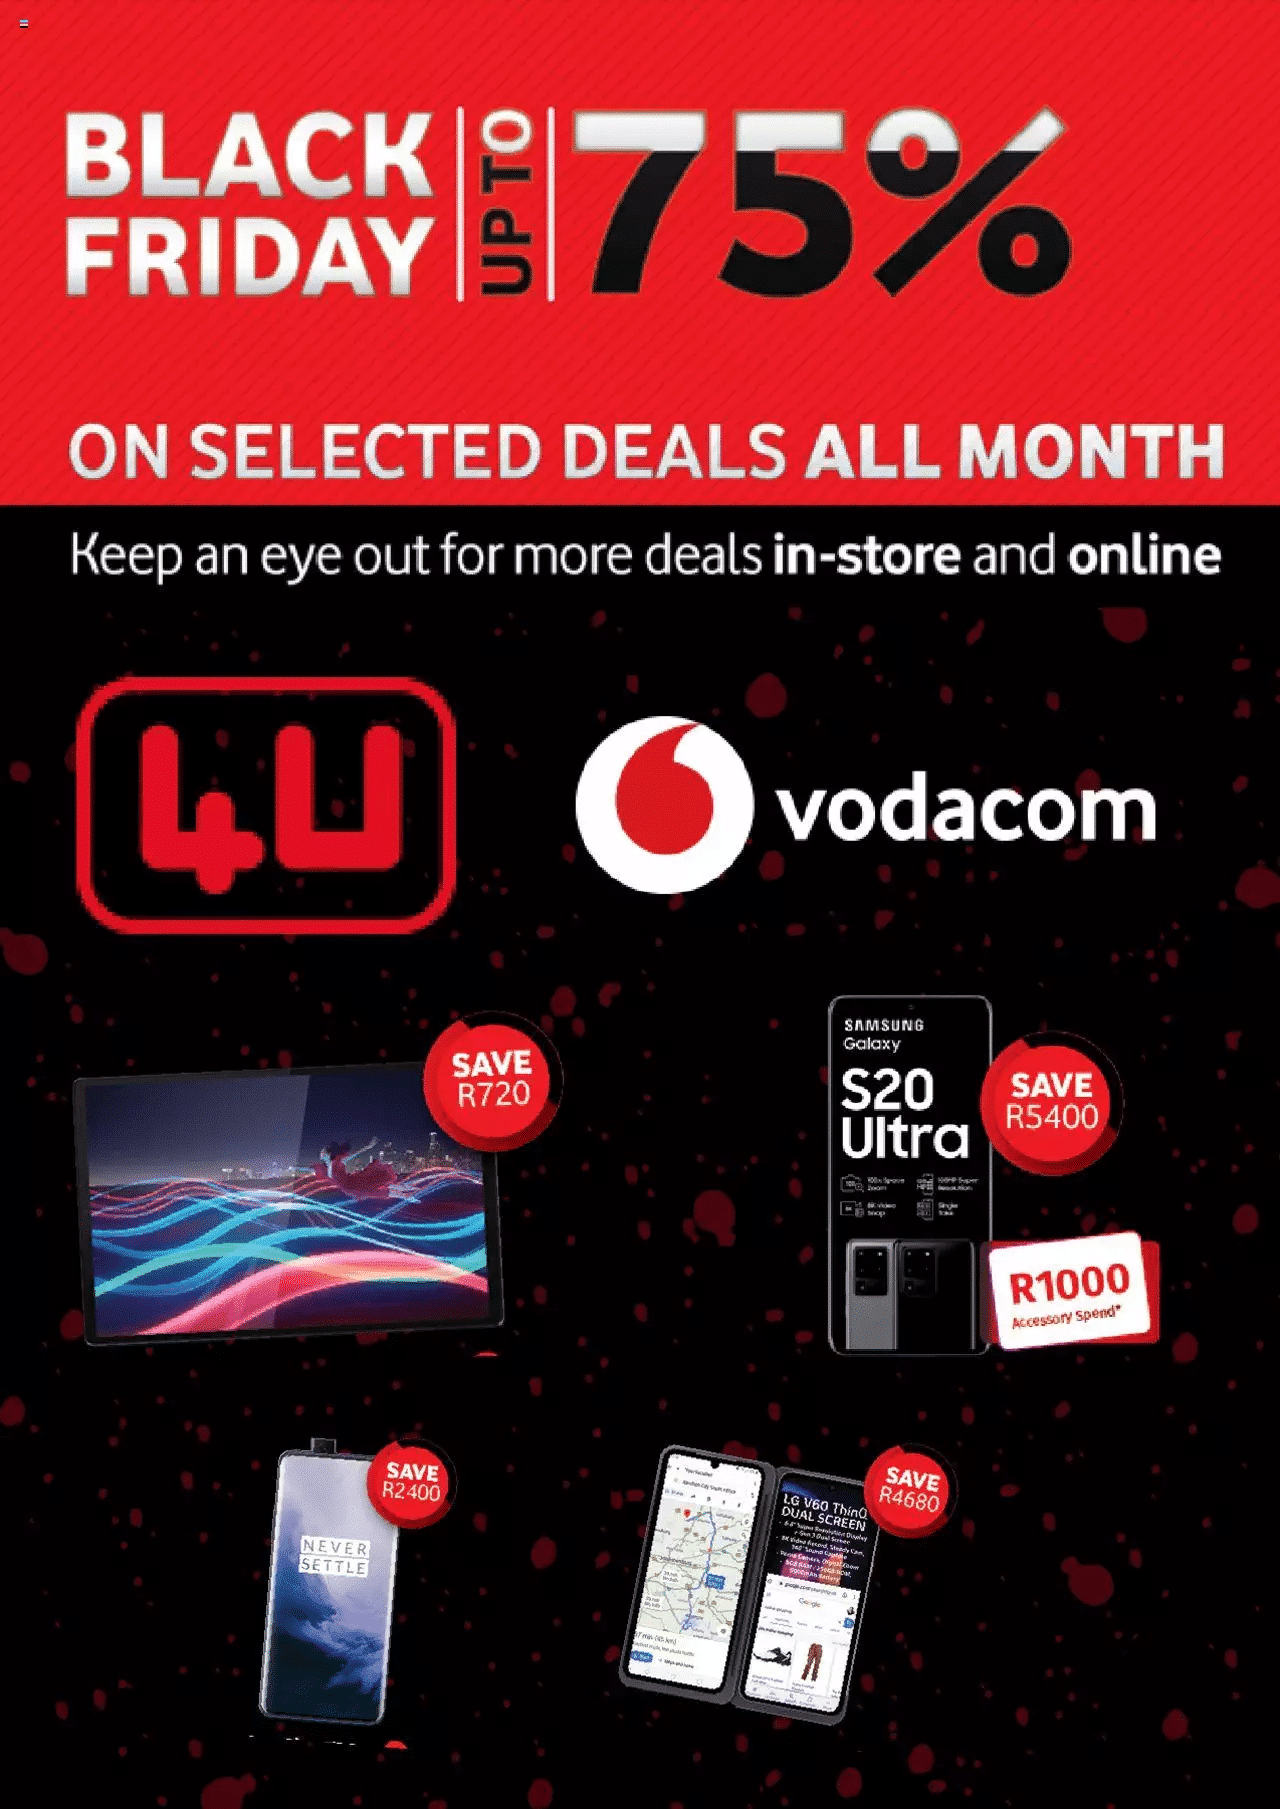 Vodacom Black Friday Deals & Specials 2021 - How Are Black Friday Deals Possible